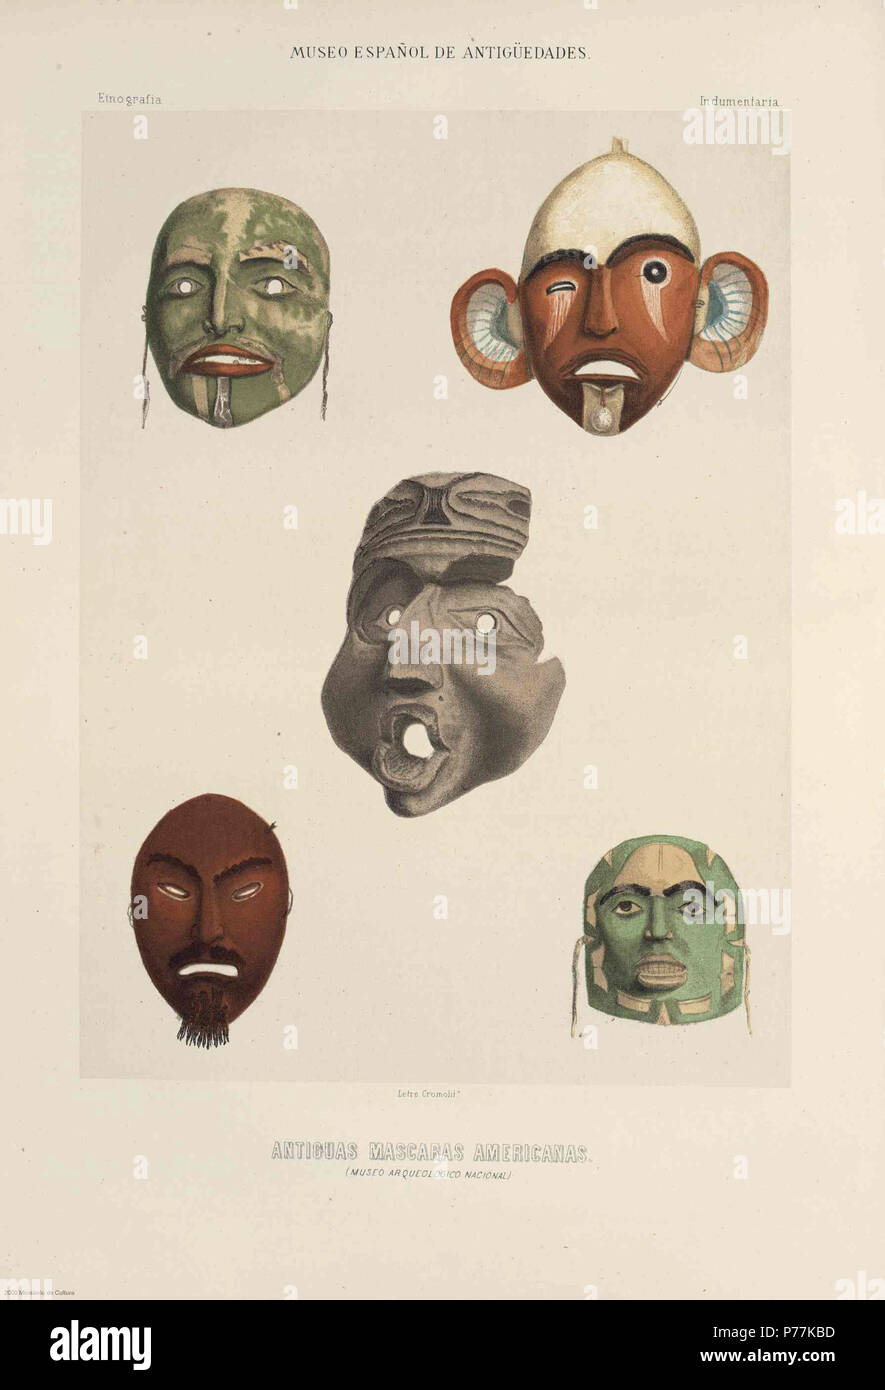 1 1872, Museo Español de Antigüedades, Antiguas máscaras americanas, Letre Stock Photo